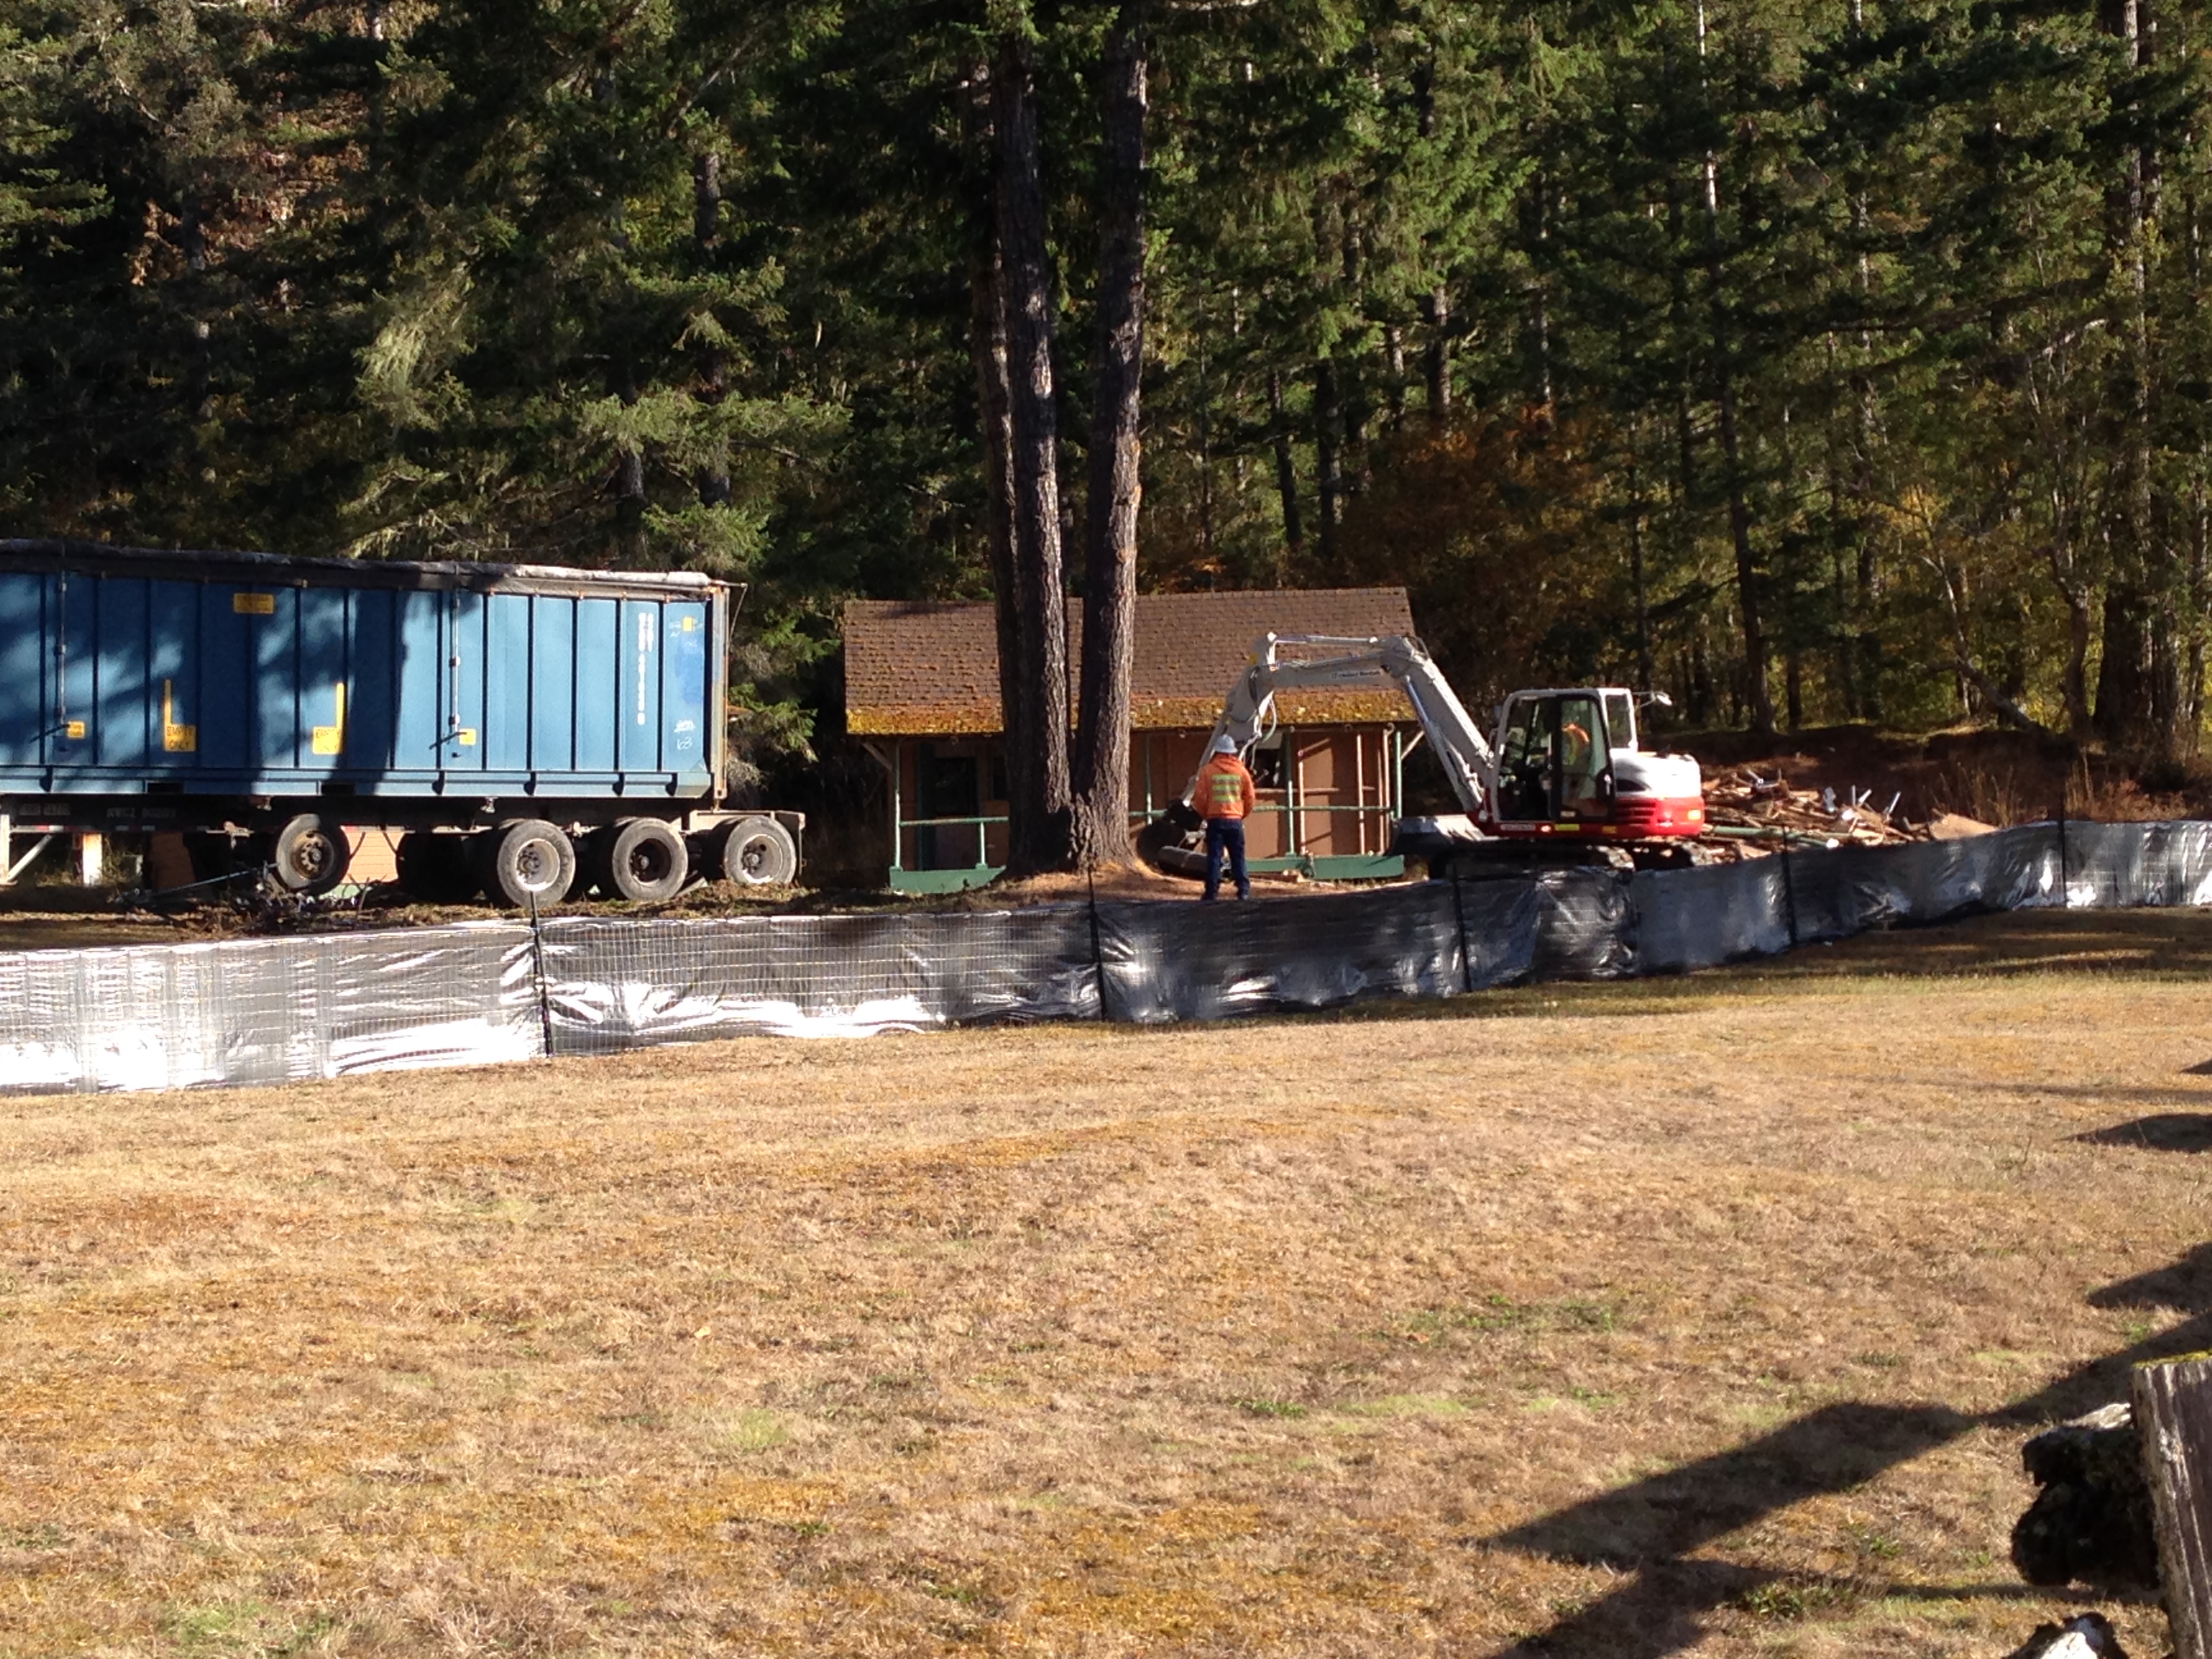 Demolition underway on deteriorated cabin